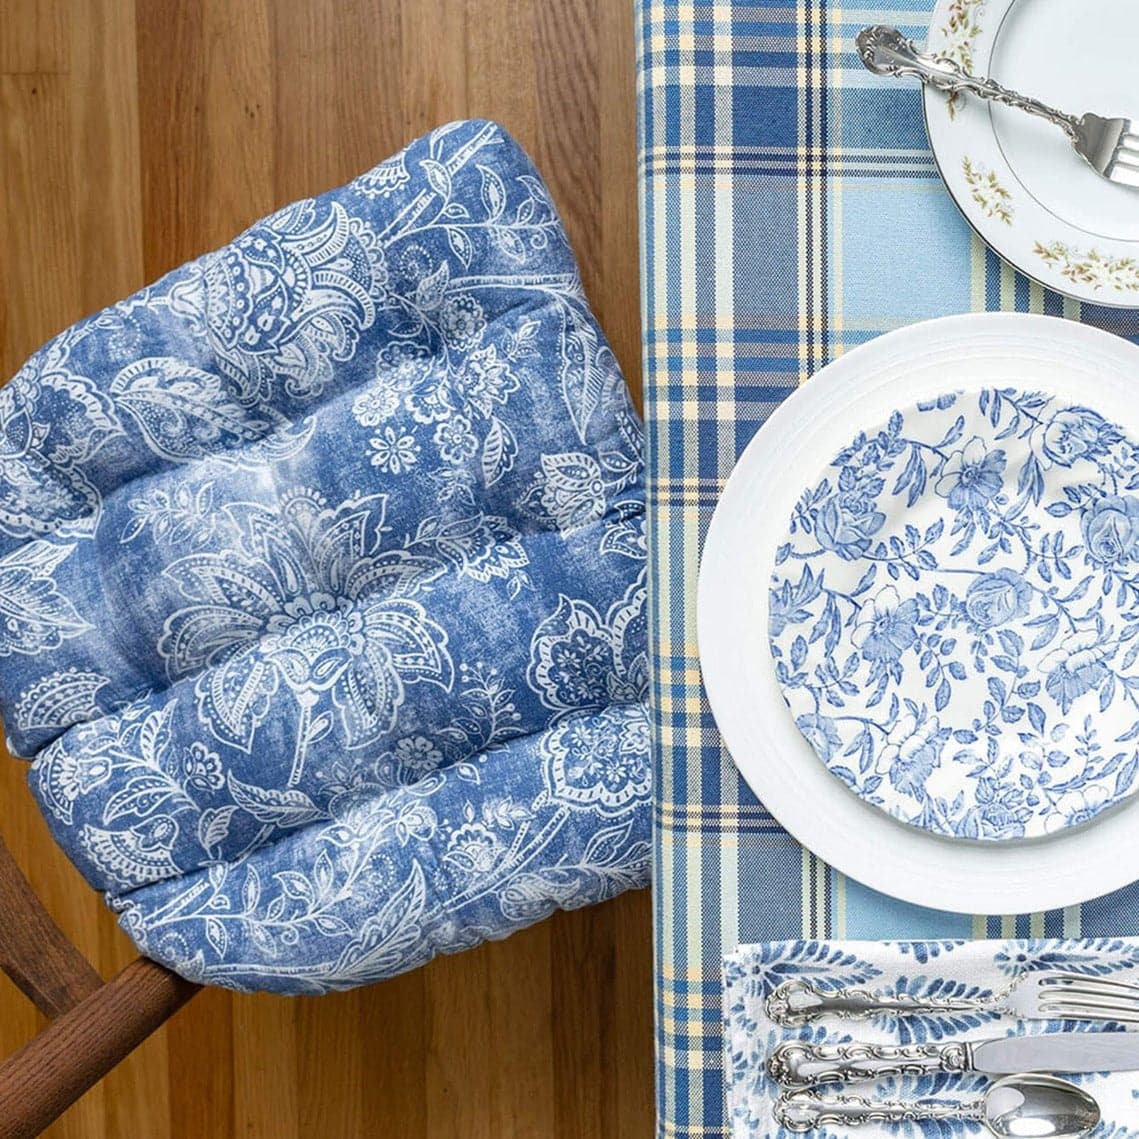 Williamsburg Blue Dining Chair Cushions - Barnett Home Decor - Blue & White